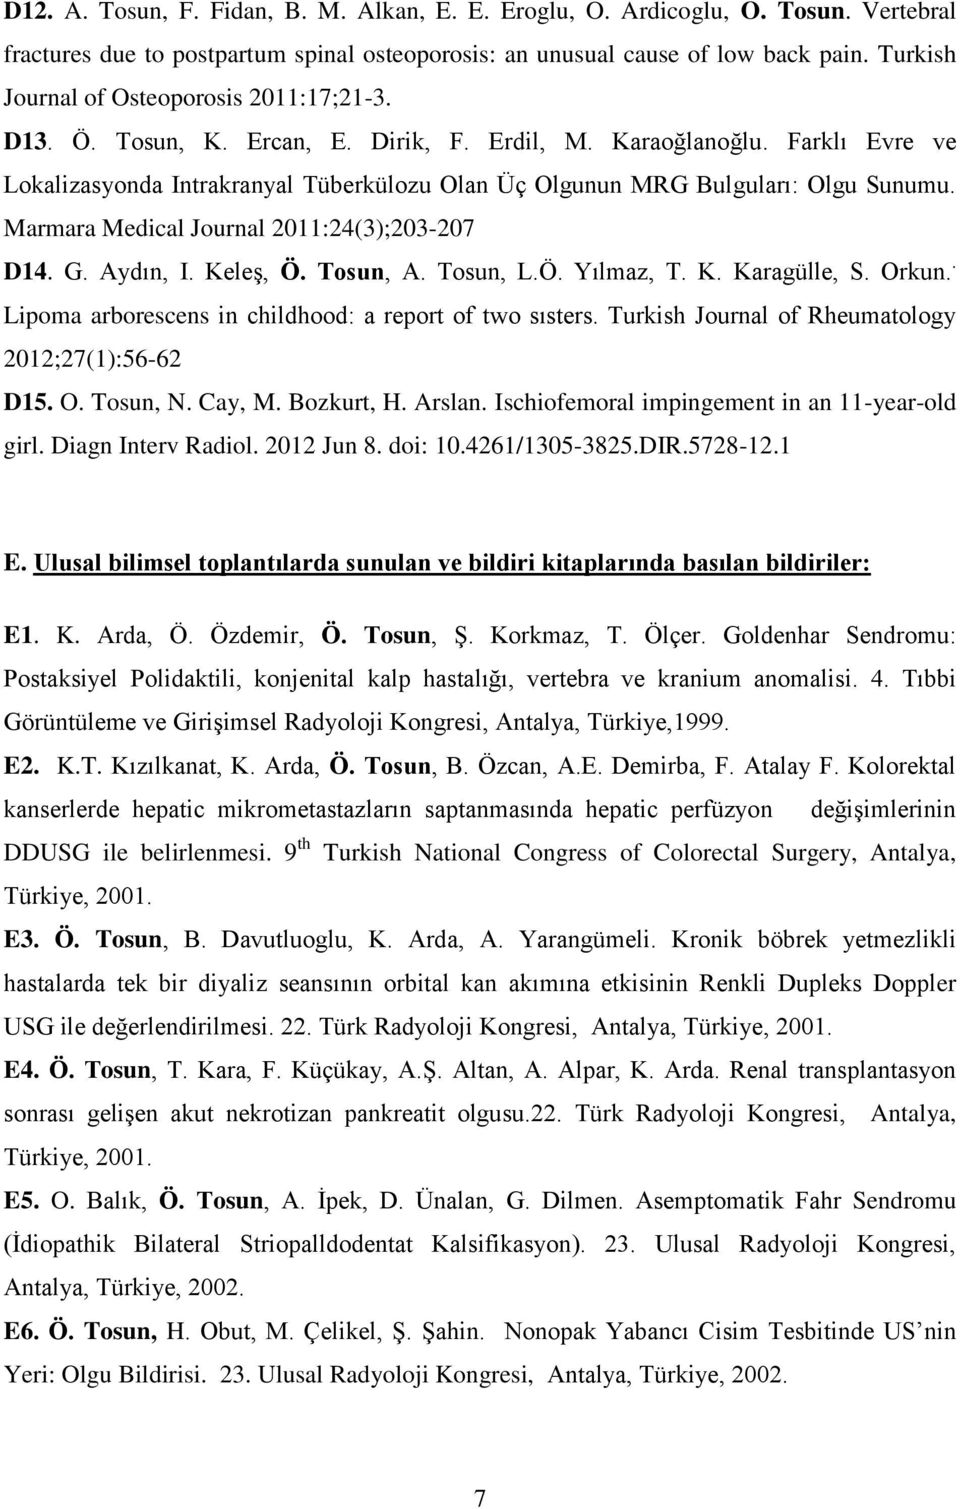 Farklı Evre ve Lokalizasyonda Intrakranyal Tüberkülozu Olan Üç Olgunun MRG Bulguları: Olgu Sunumu. Marmara Medical Journal 2011:24(3);203-207 D14. G. Aydın, I. Keleş, Ö. Tosun, A. Tosun, L.Ö. Yılmaz, T.